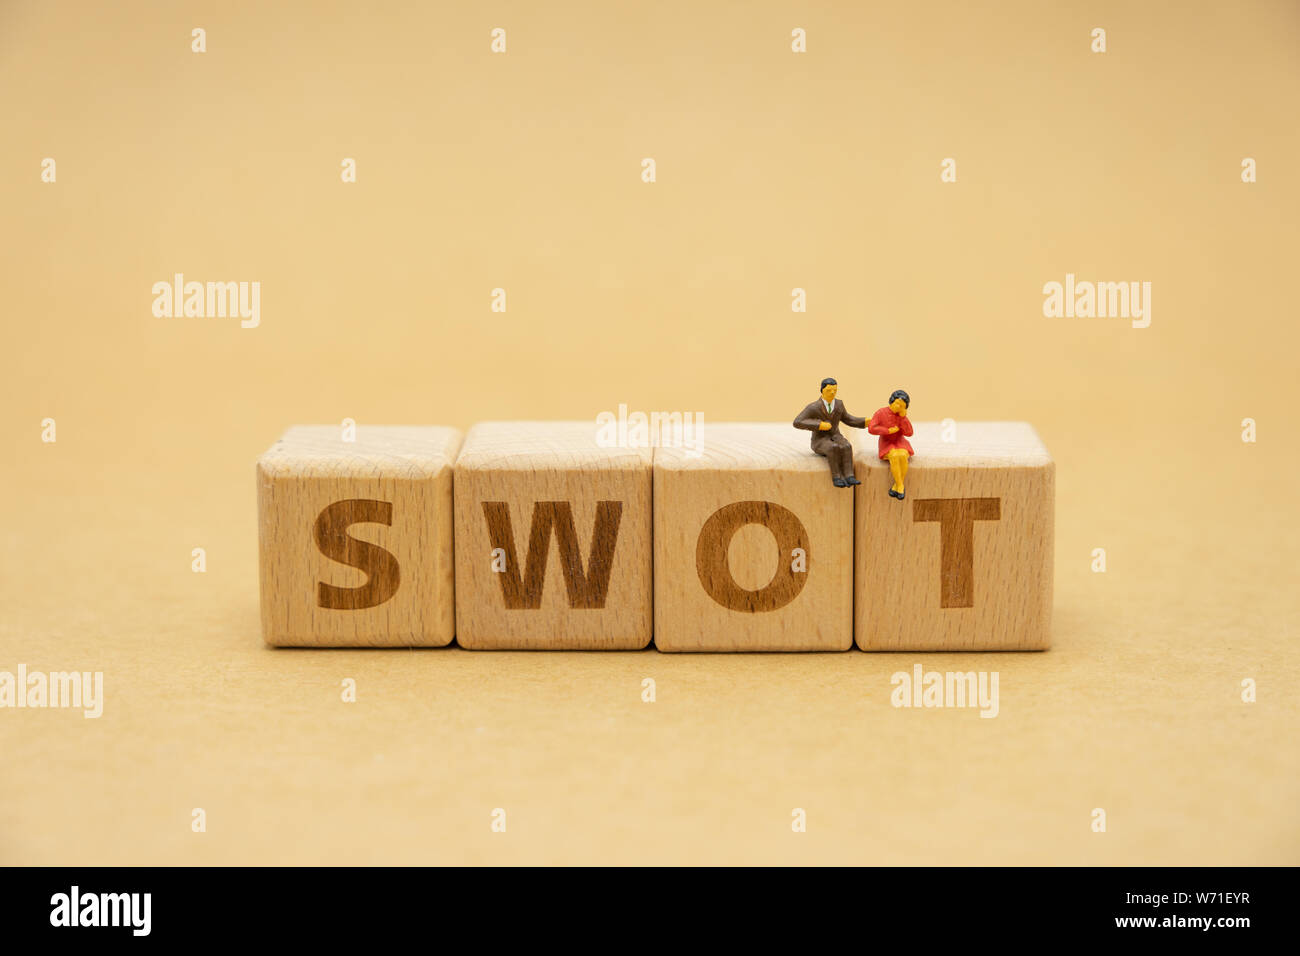 Miniatur Menschen auf Holz Wort SWOT-Sitzung als Hintergrund Business Konzept und Strategie Konzept mit Kopie Platz für Ihren Text oder Design. Stockfoto